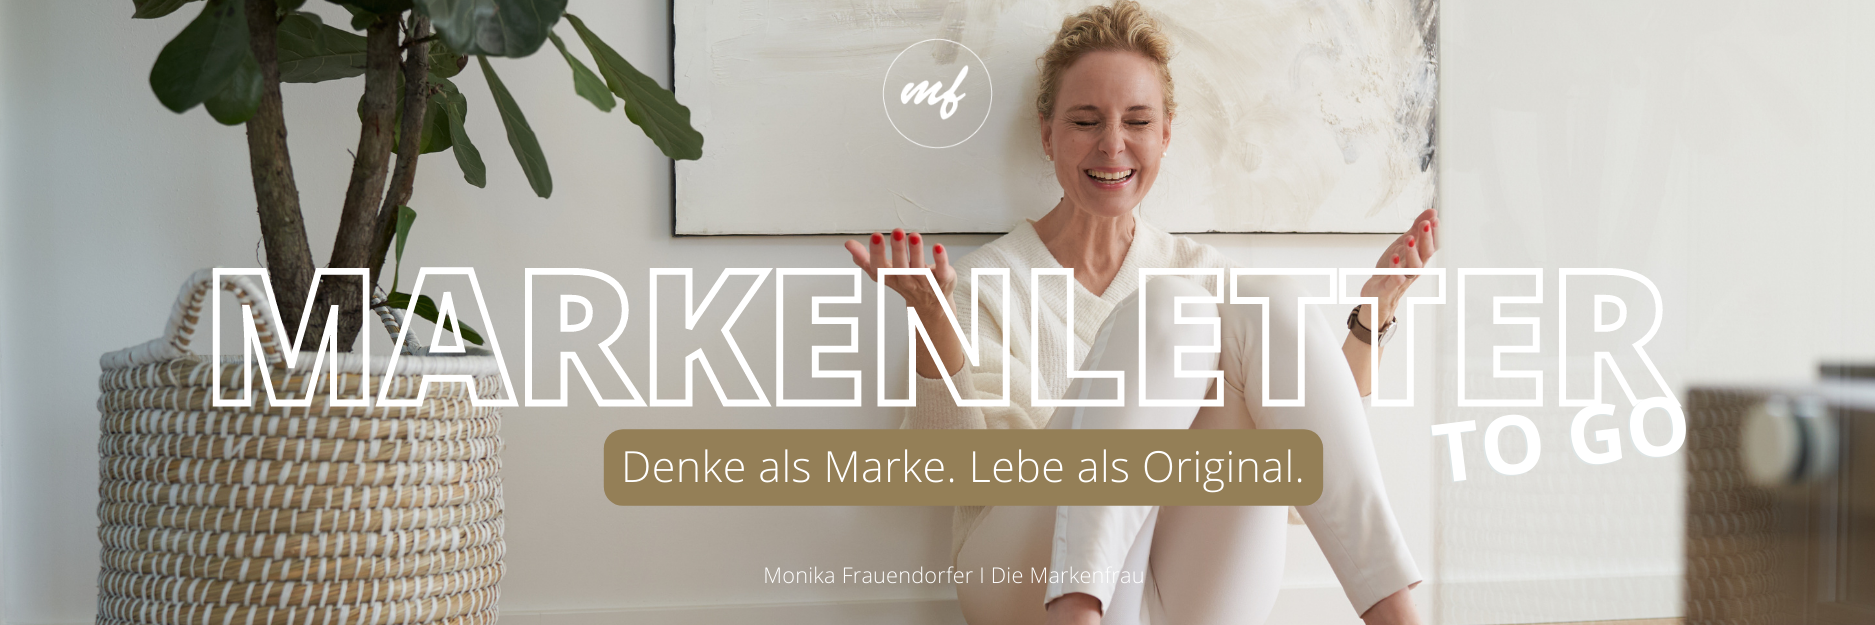 Markenletter-go-go von Monika Frauendorfer. Sie sitzt vor einem Bild am Boden und schaut schelmisch.